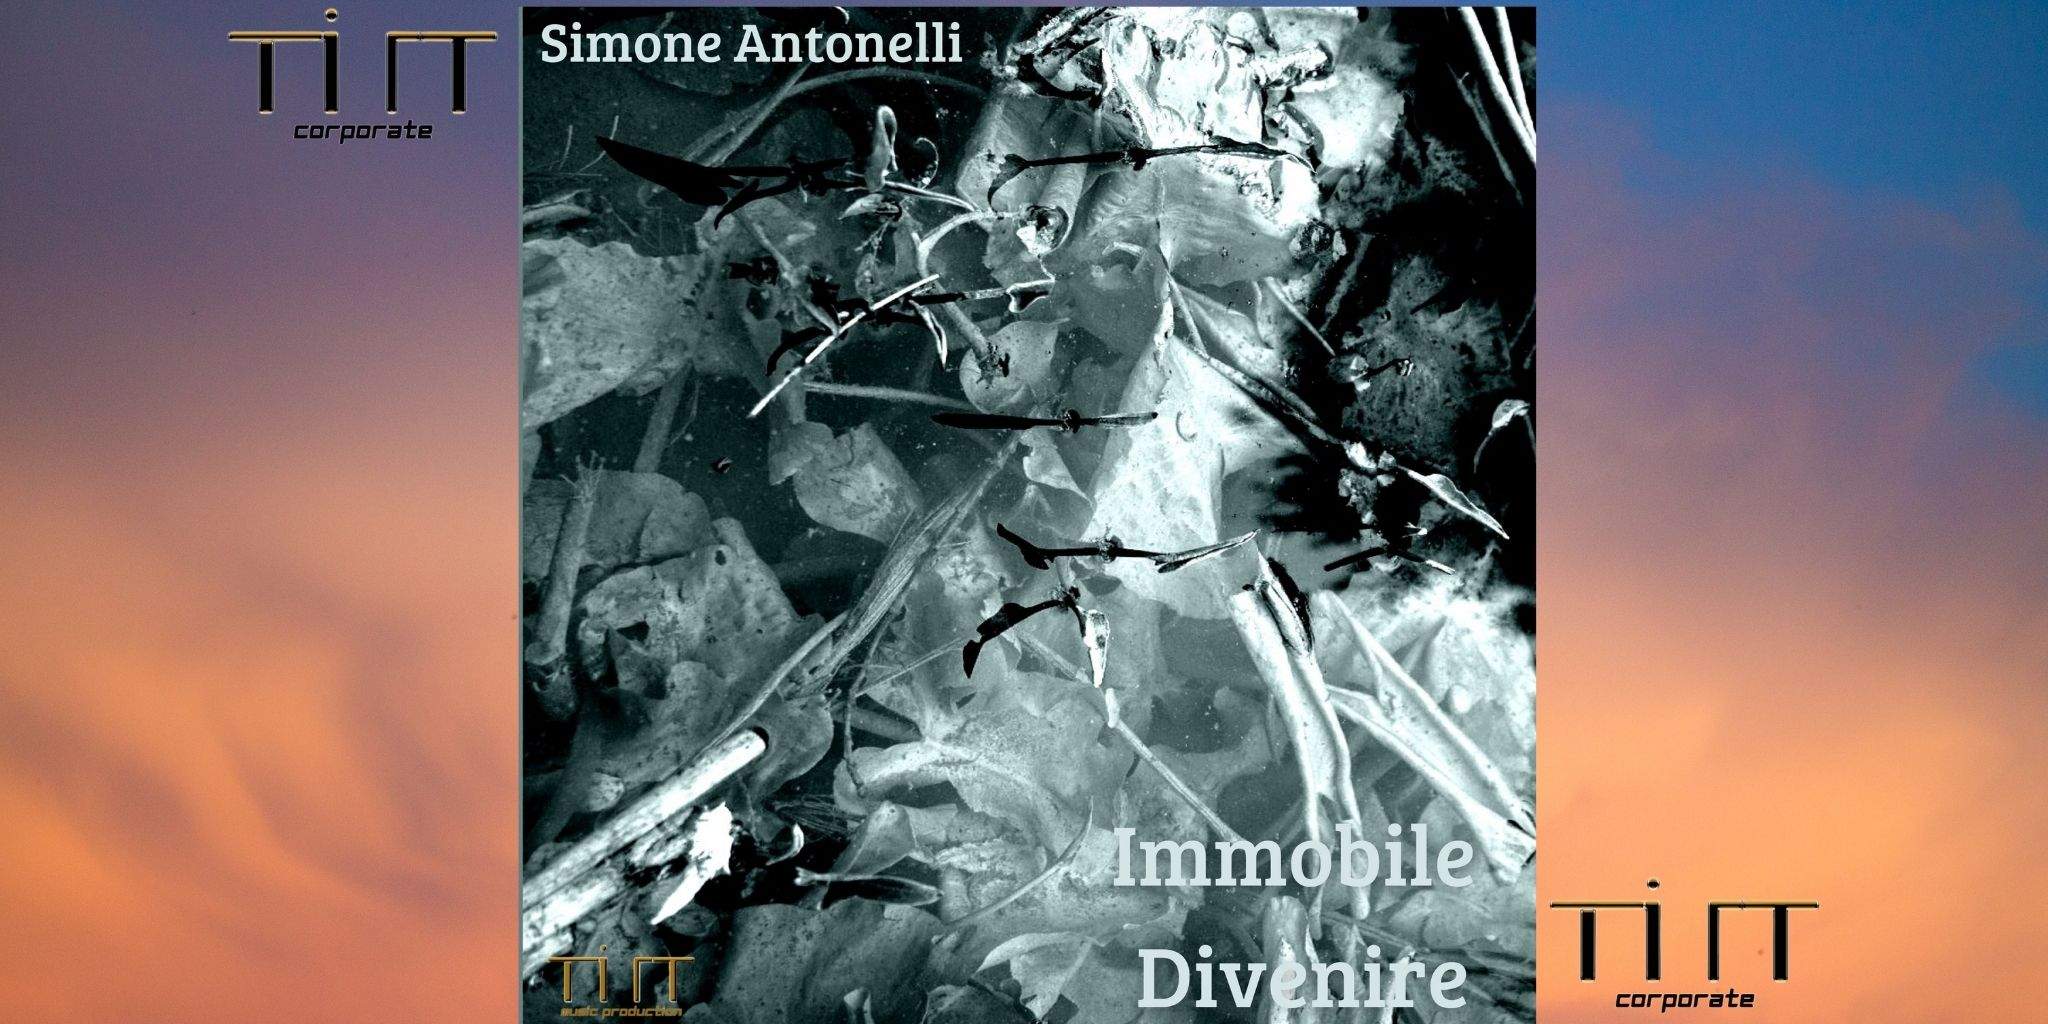 IMMOBILE DIVENIRE è il nuovo album di Simone Antonelli!